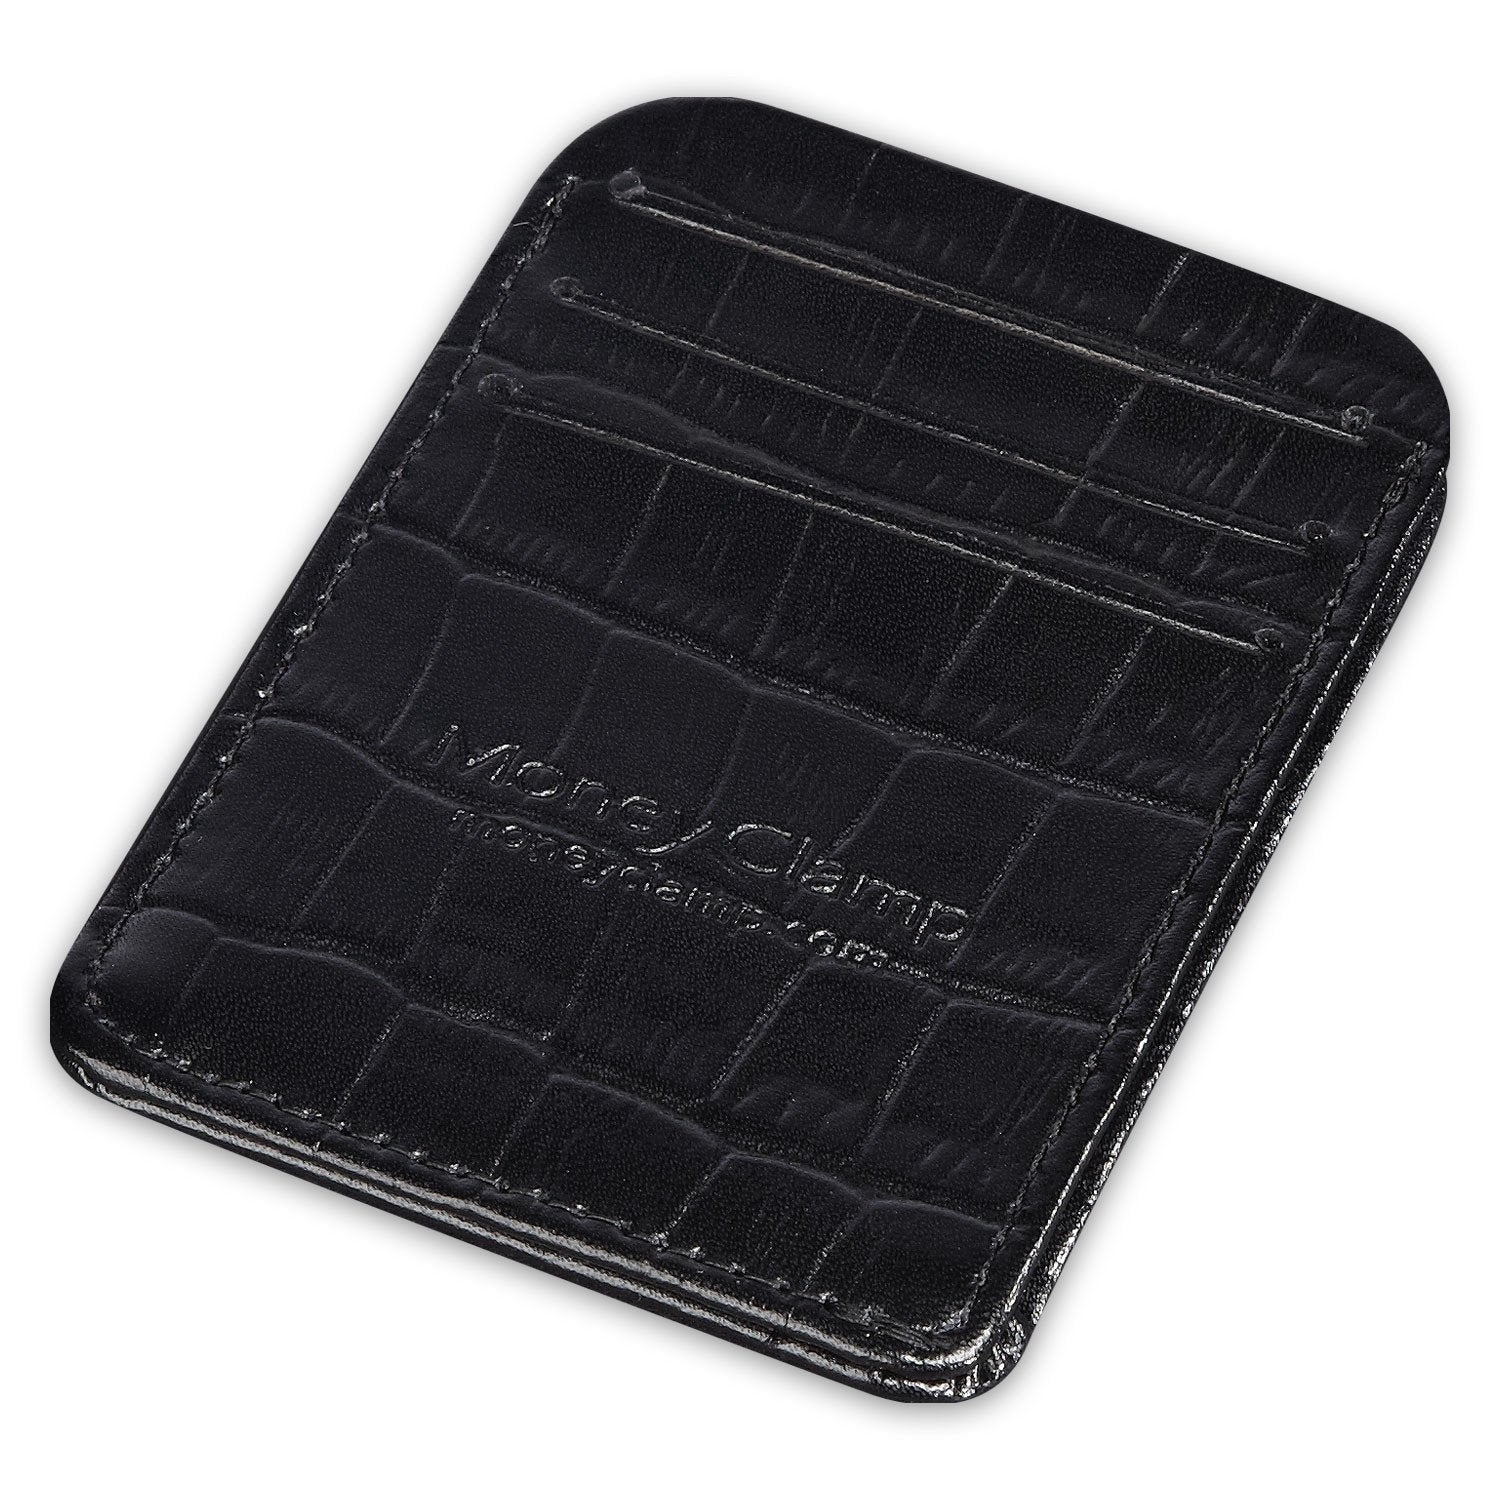 Leather Wristlet Wallet - Black embossed Crocodile print – Brenda